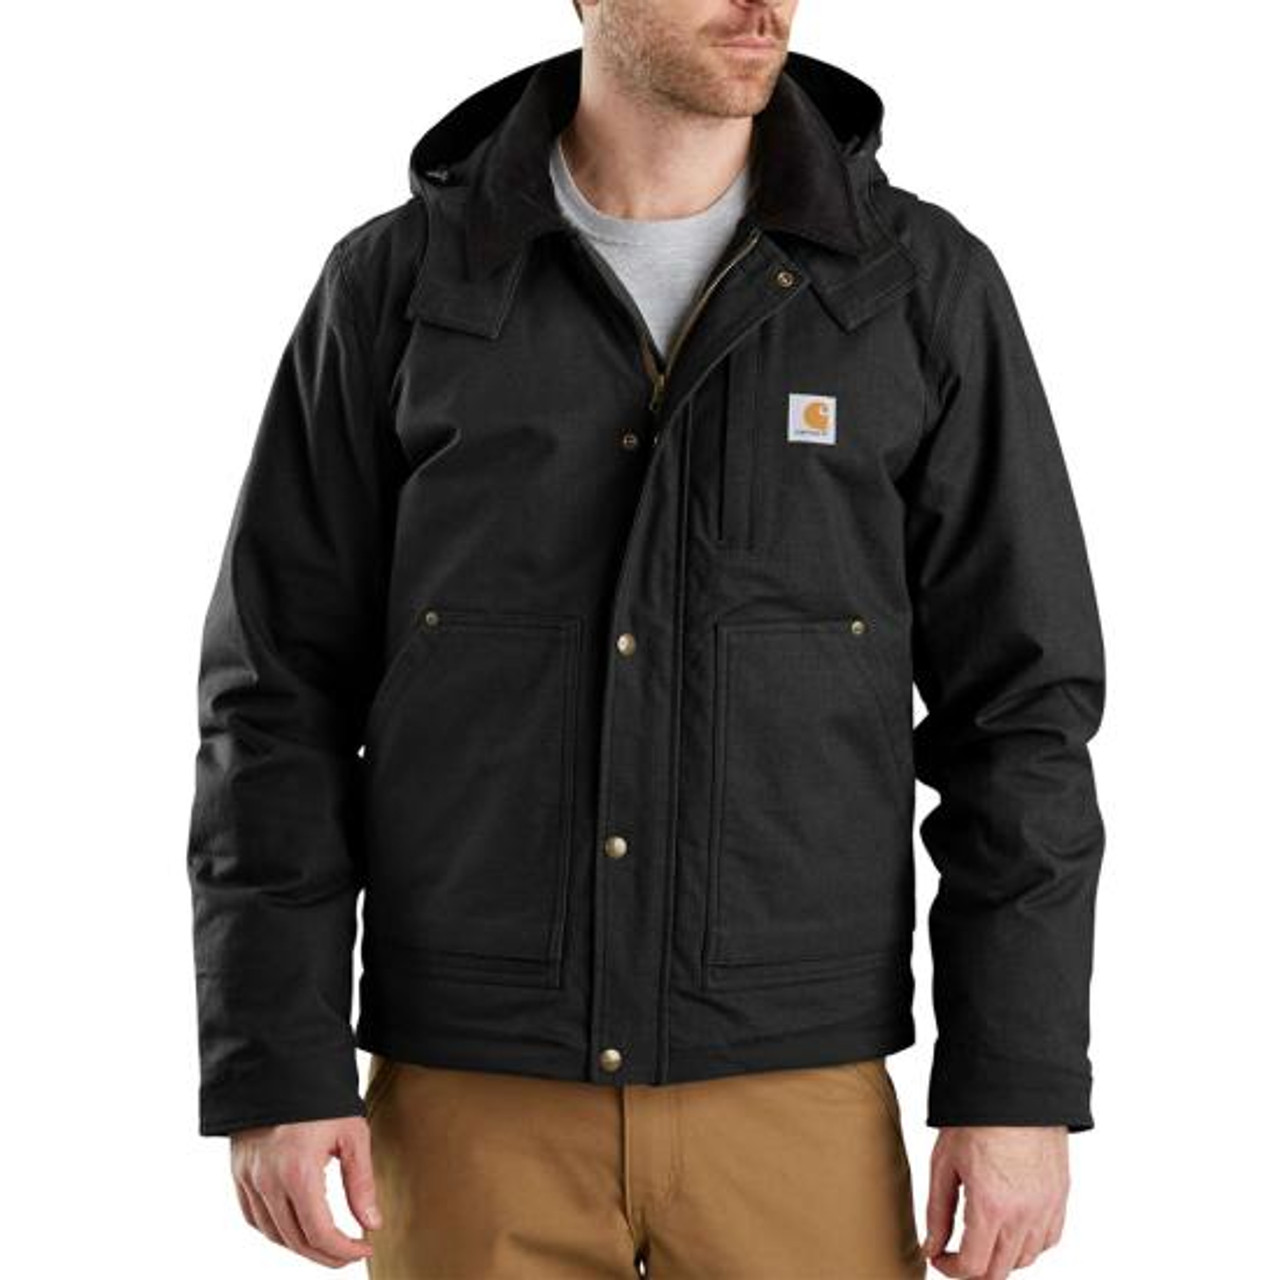 Carhartt full swing ripstop insulated jacket 103372 - Jimmy's Work N Wear